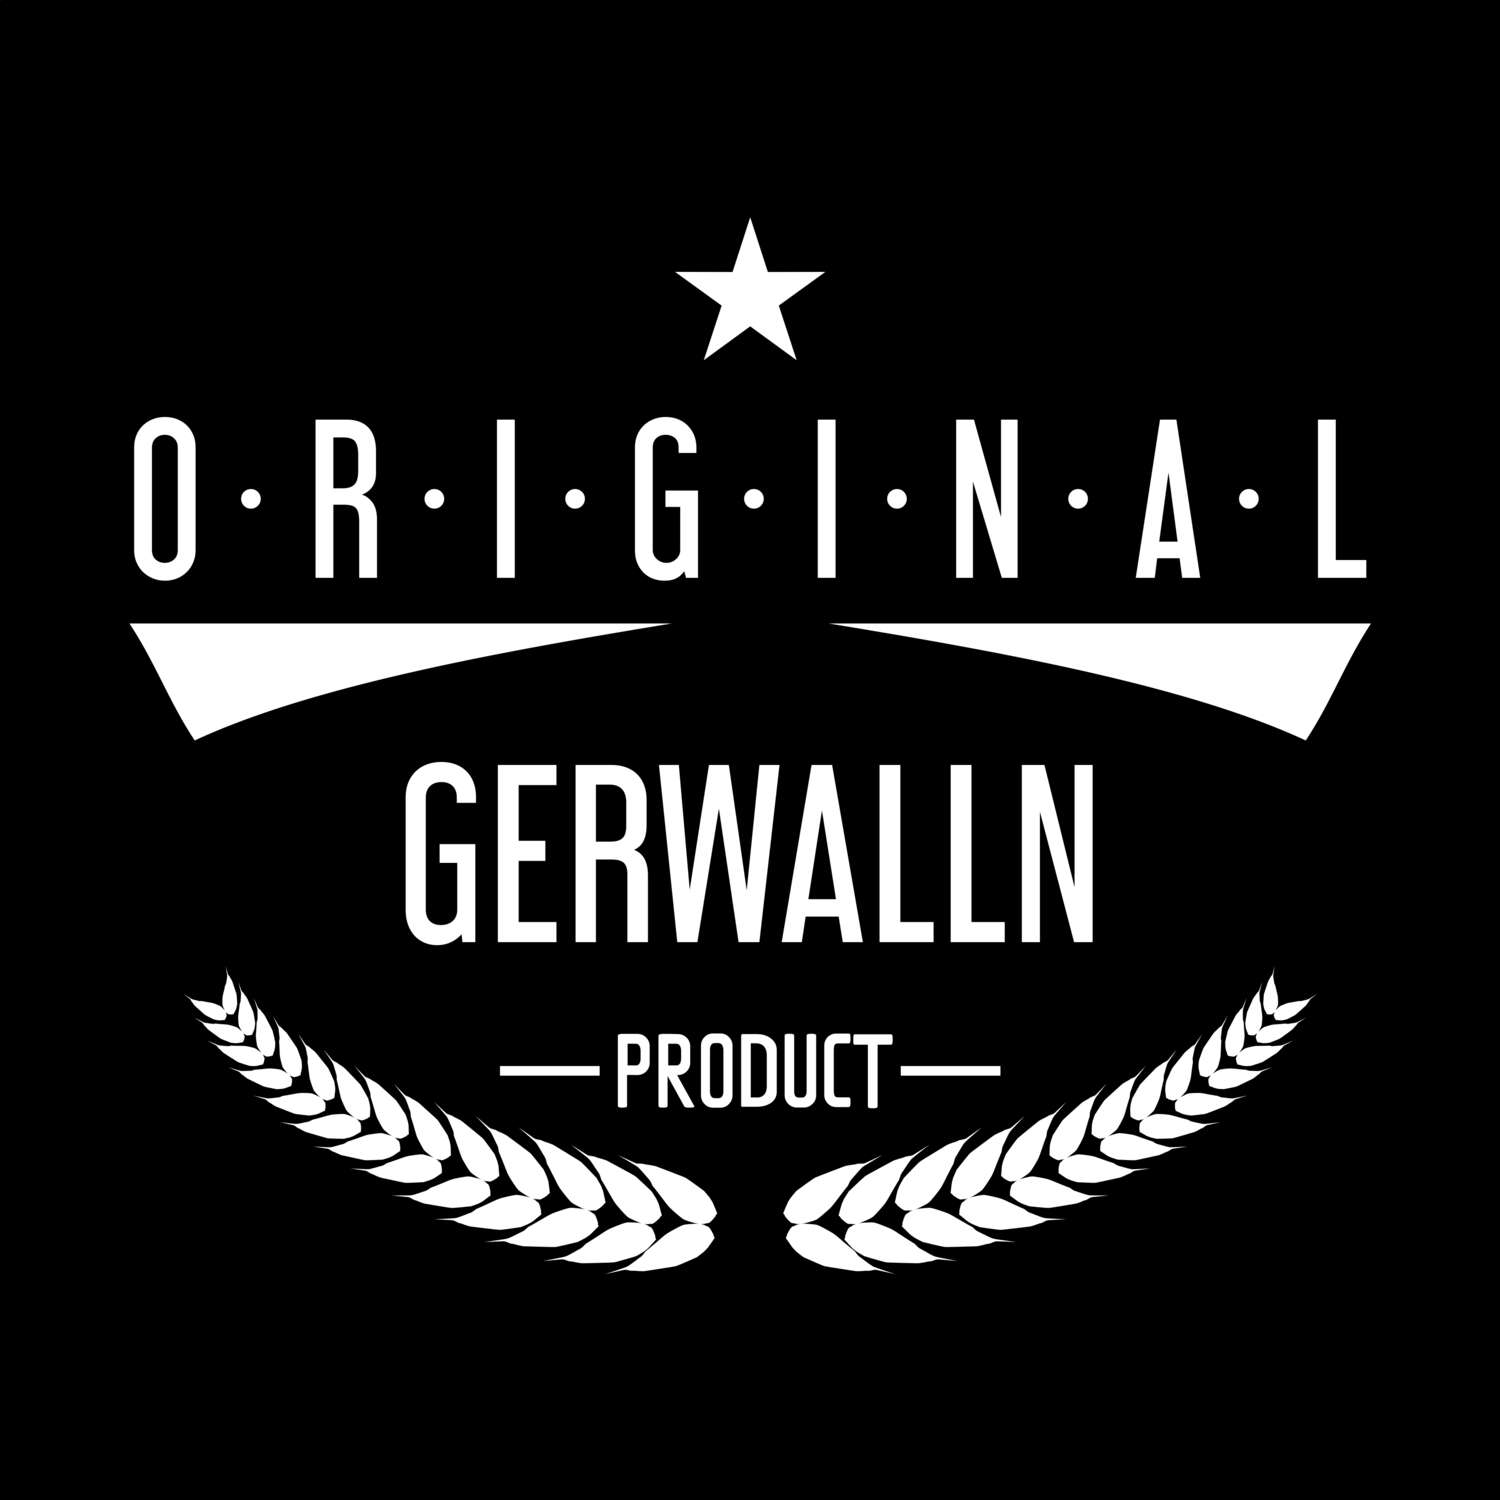 Gerwalln T-Shirt »Original Product«